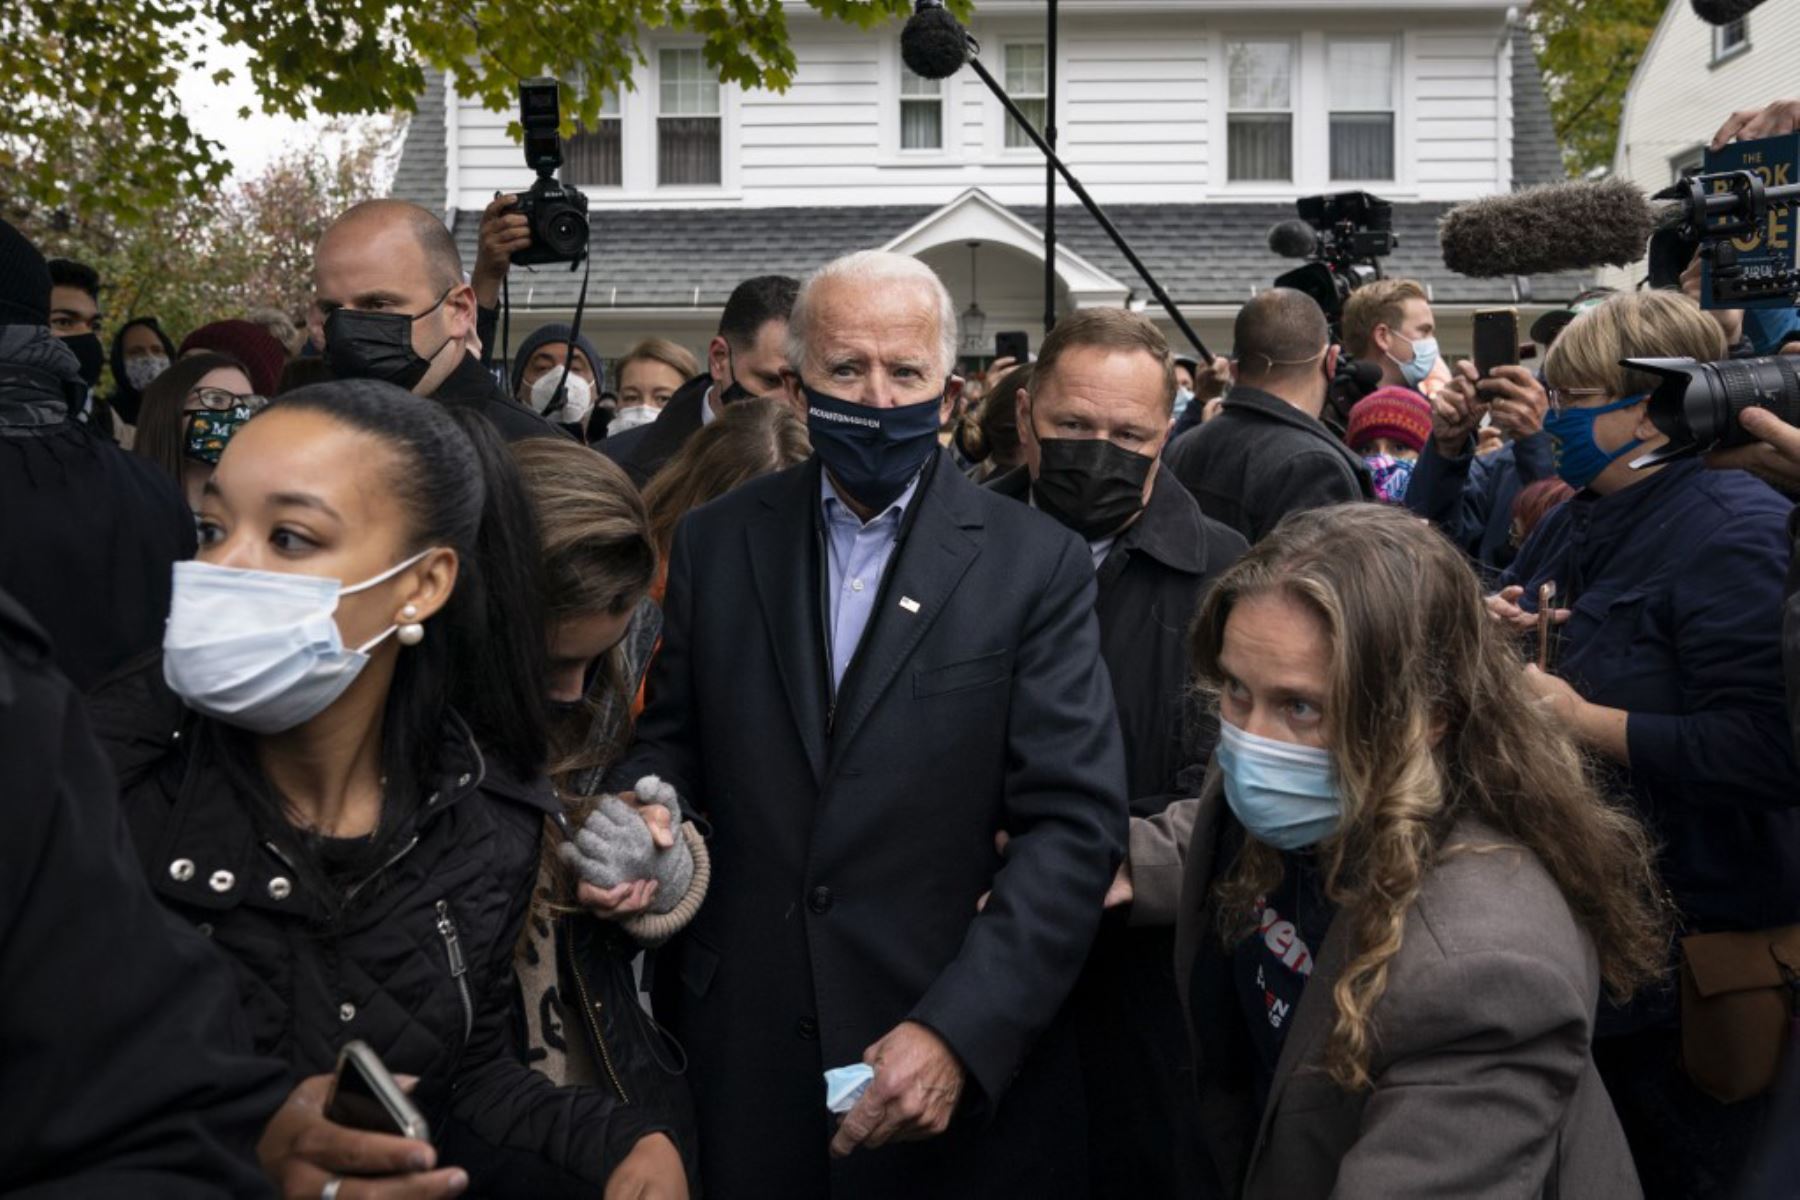 El candidato presidencial demócrata Joe Biden visita la casa de un vecino después de pasar por el vecindario de su infancia en Scranton, Pensilvania. 

Foto: AFP